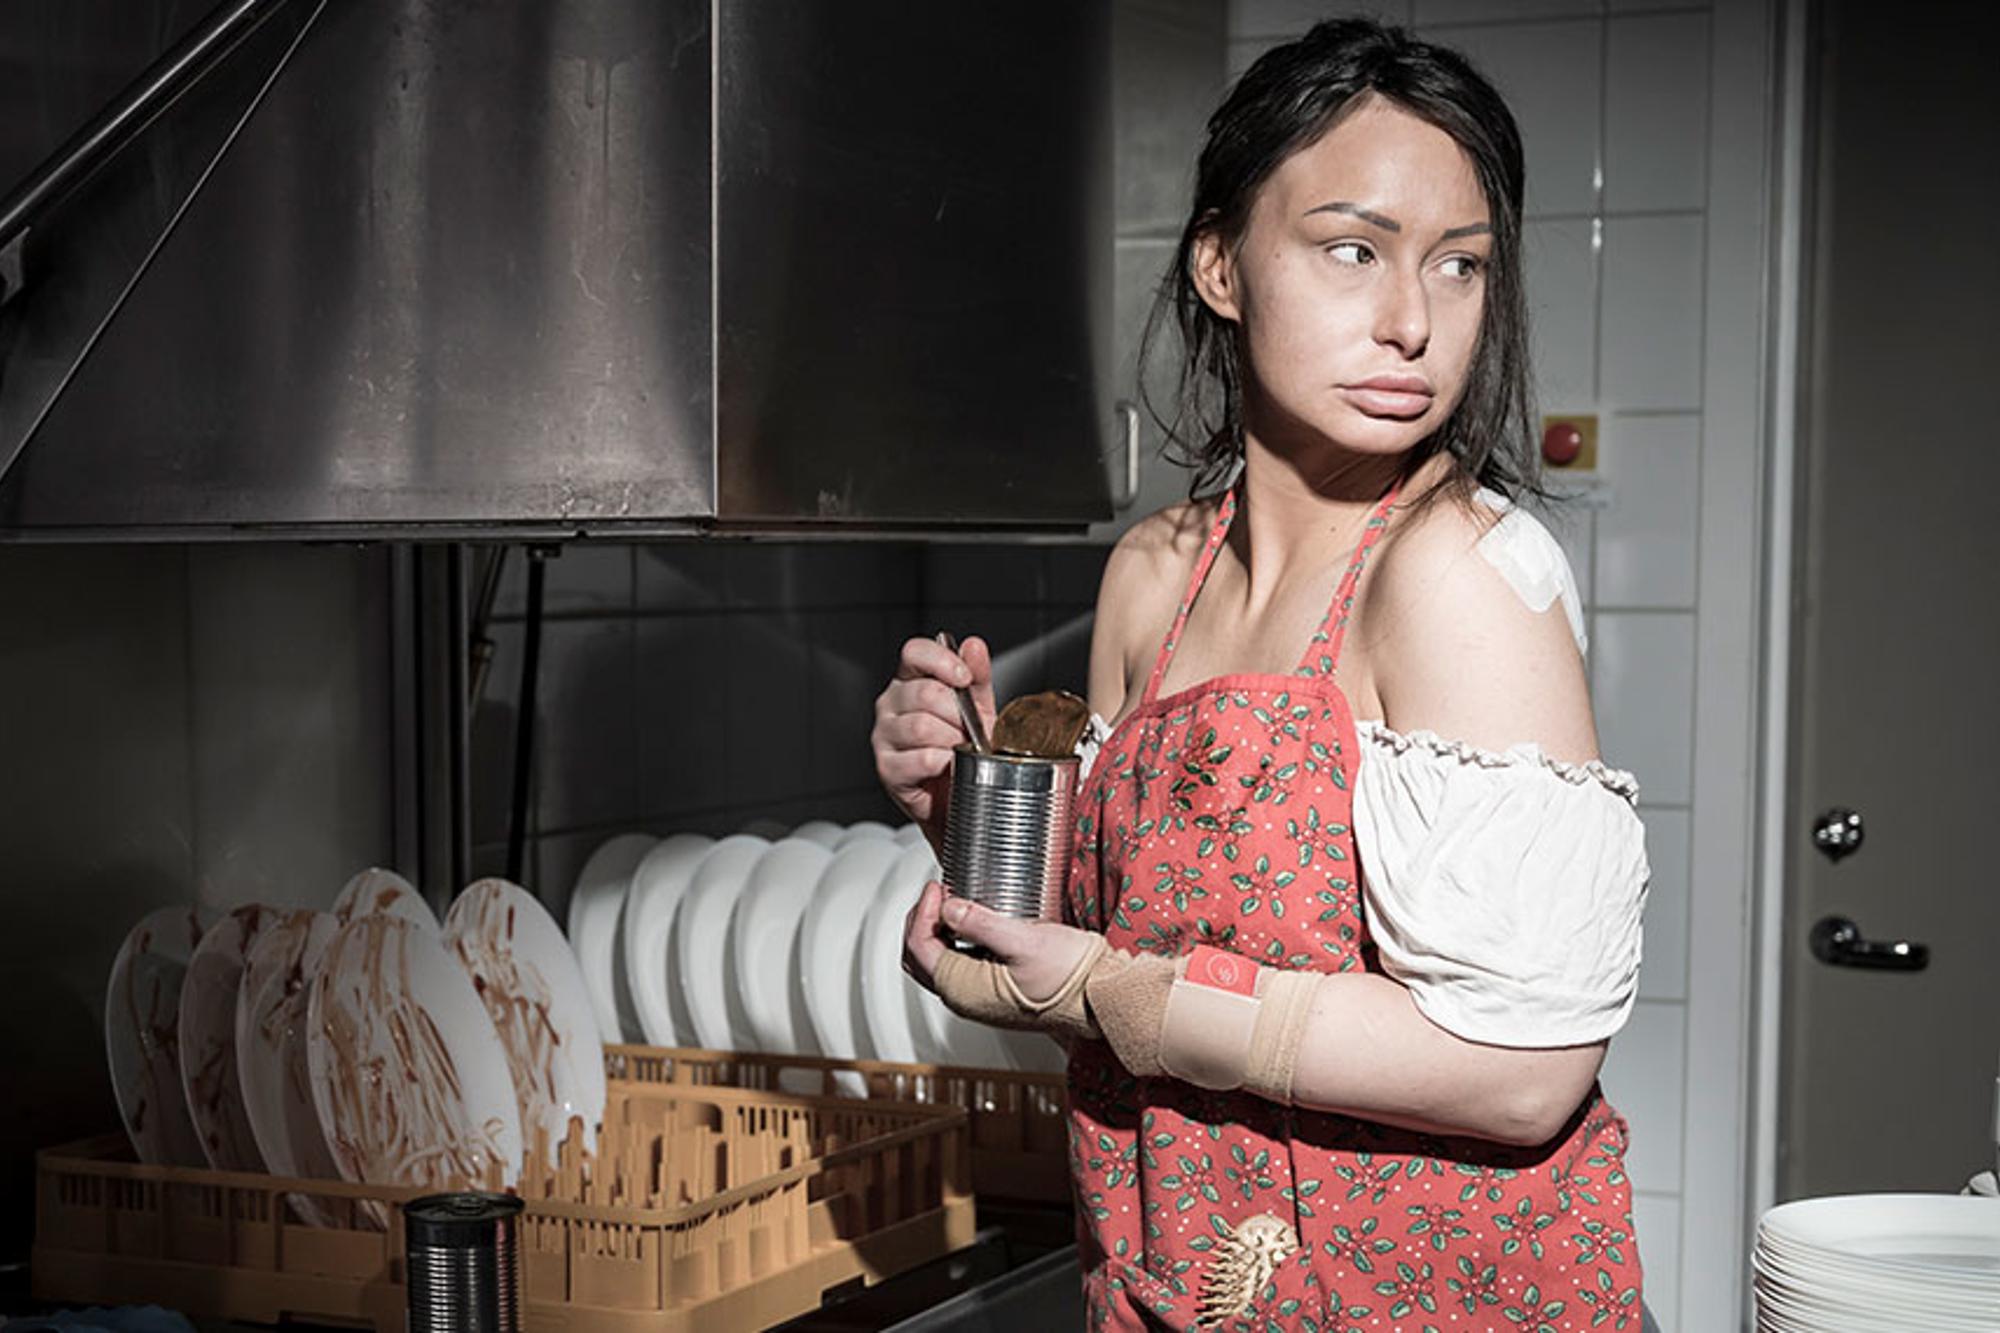 En ung kvinna med plåster på axeln och trasiga kläder står vid en industridiskmaskin och äter ur en konsvervburk.